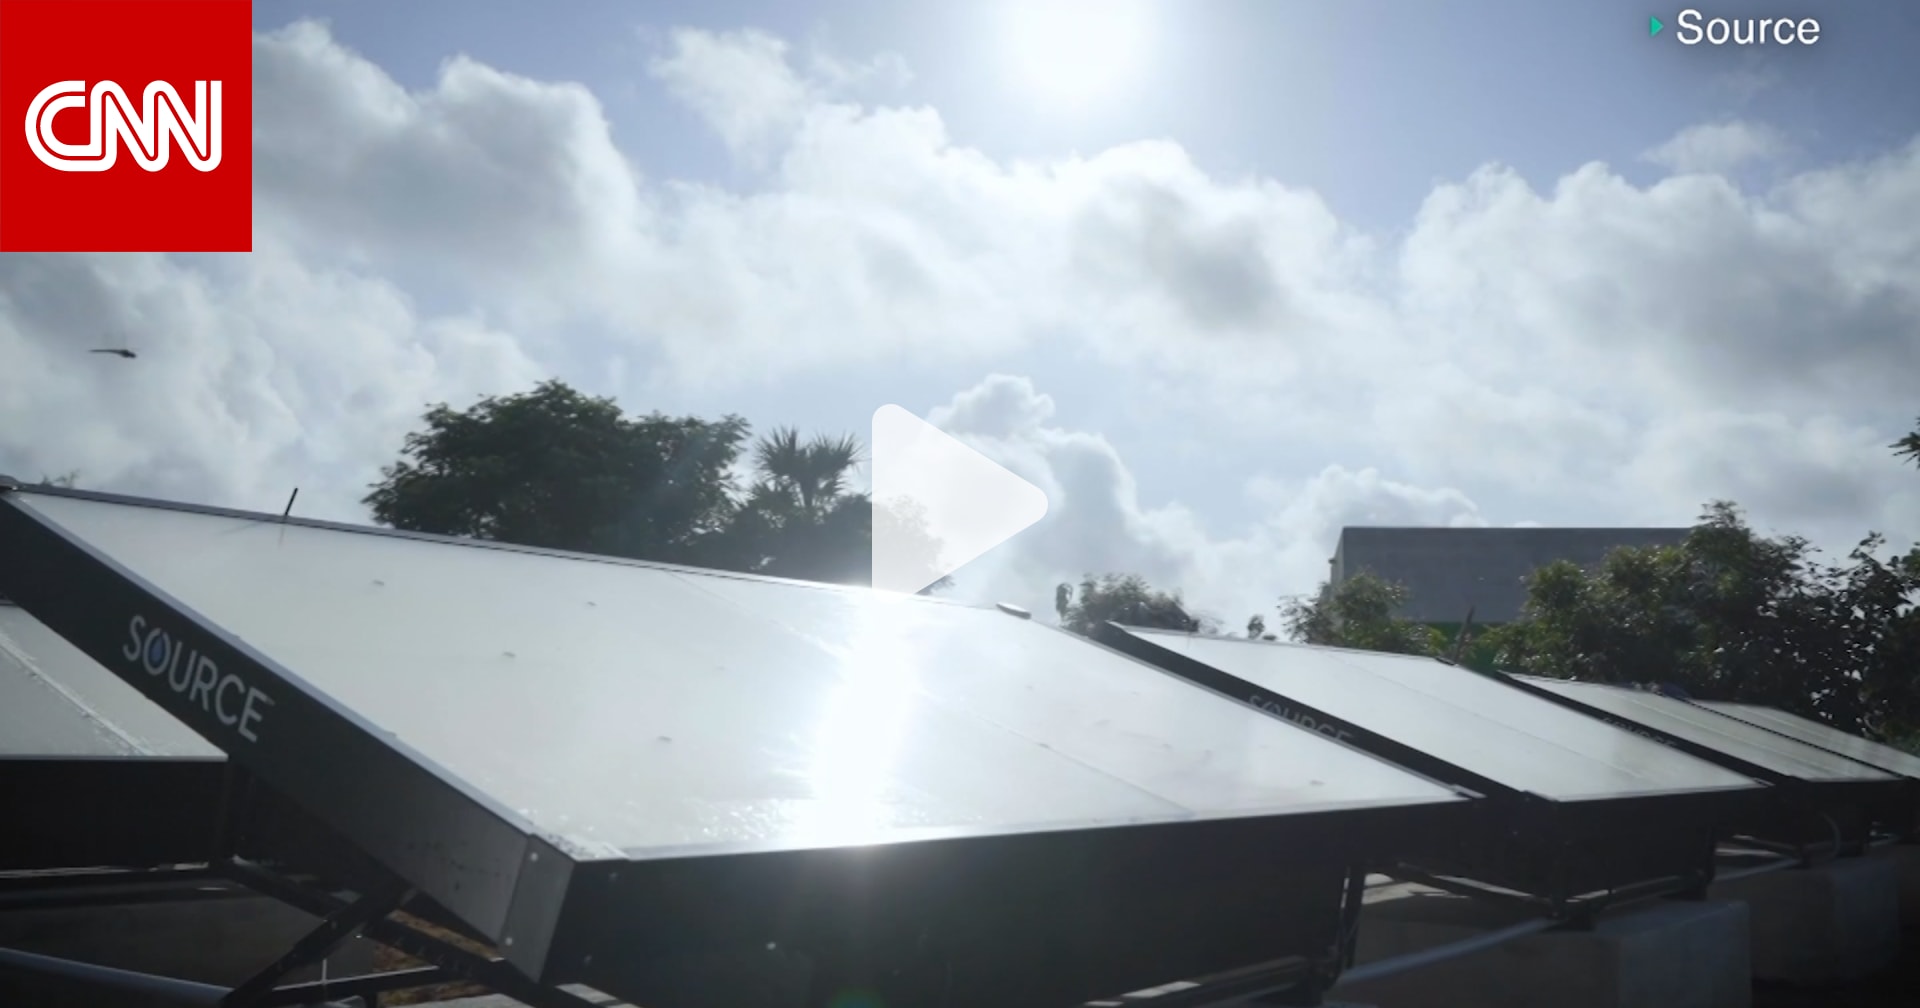 شركة تستخدم طاقة الشمس لتحويل الهواء الى مياه الشرب في دبي.. كيف تفعل ذلك؟